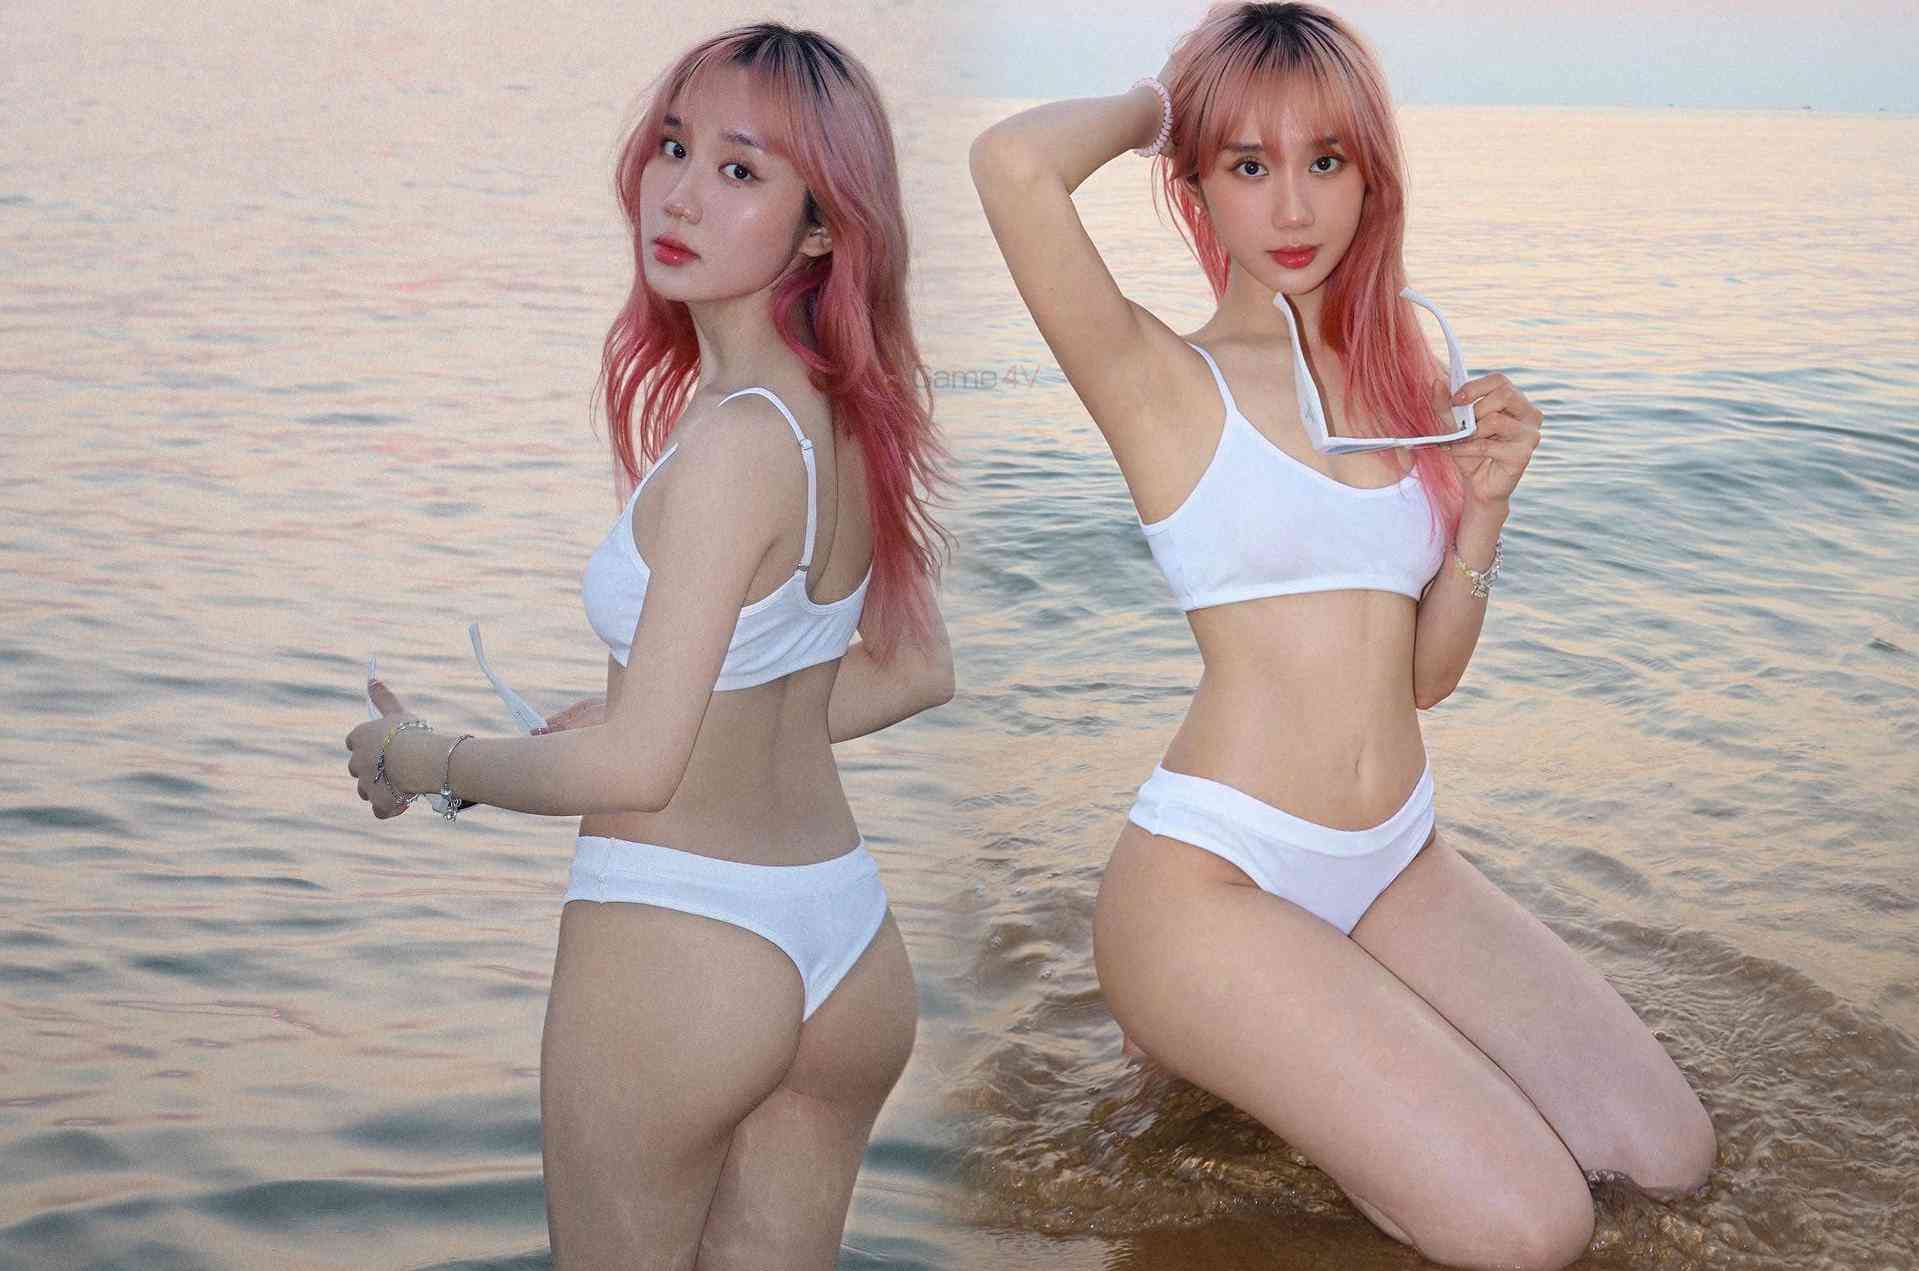 Mina Young khoe 3 vòng 'bốc lửa' trong bộ ảnh bikini làm rapper B Ray cũng phải 'thả tim'